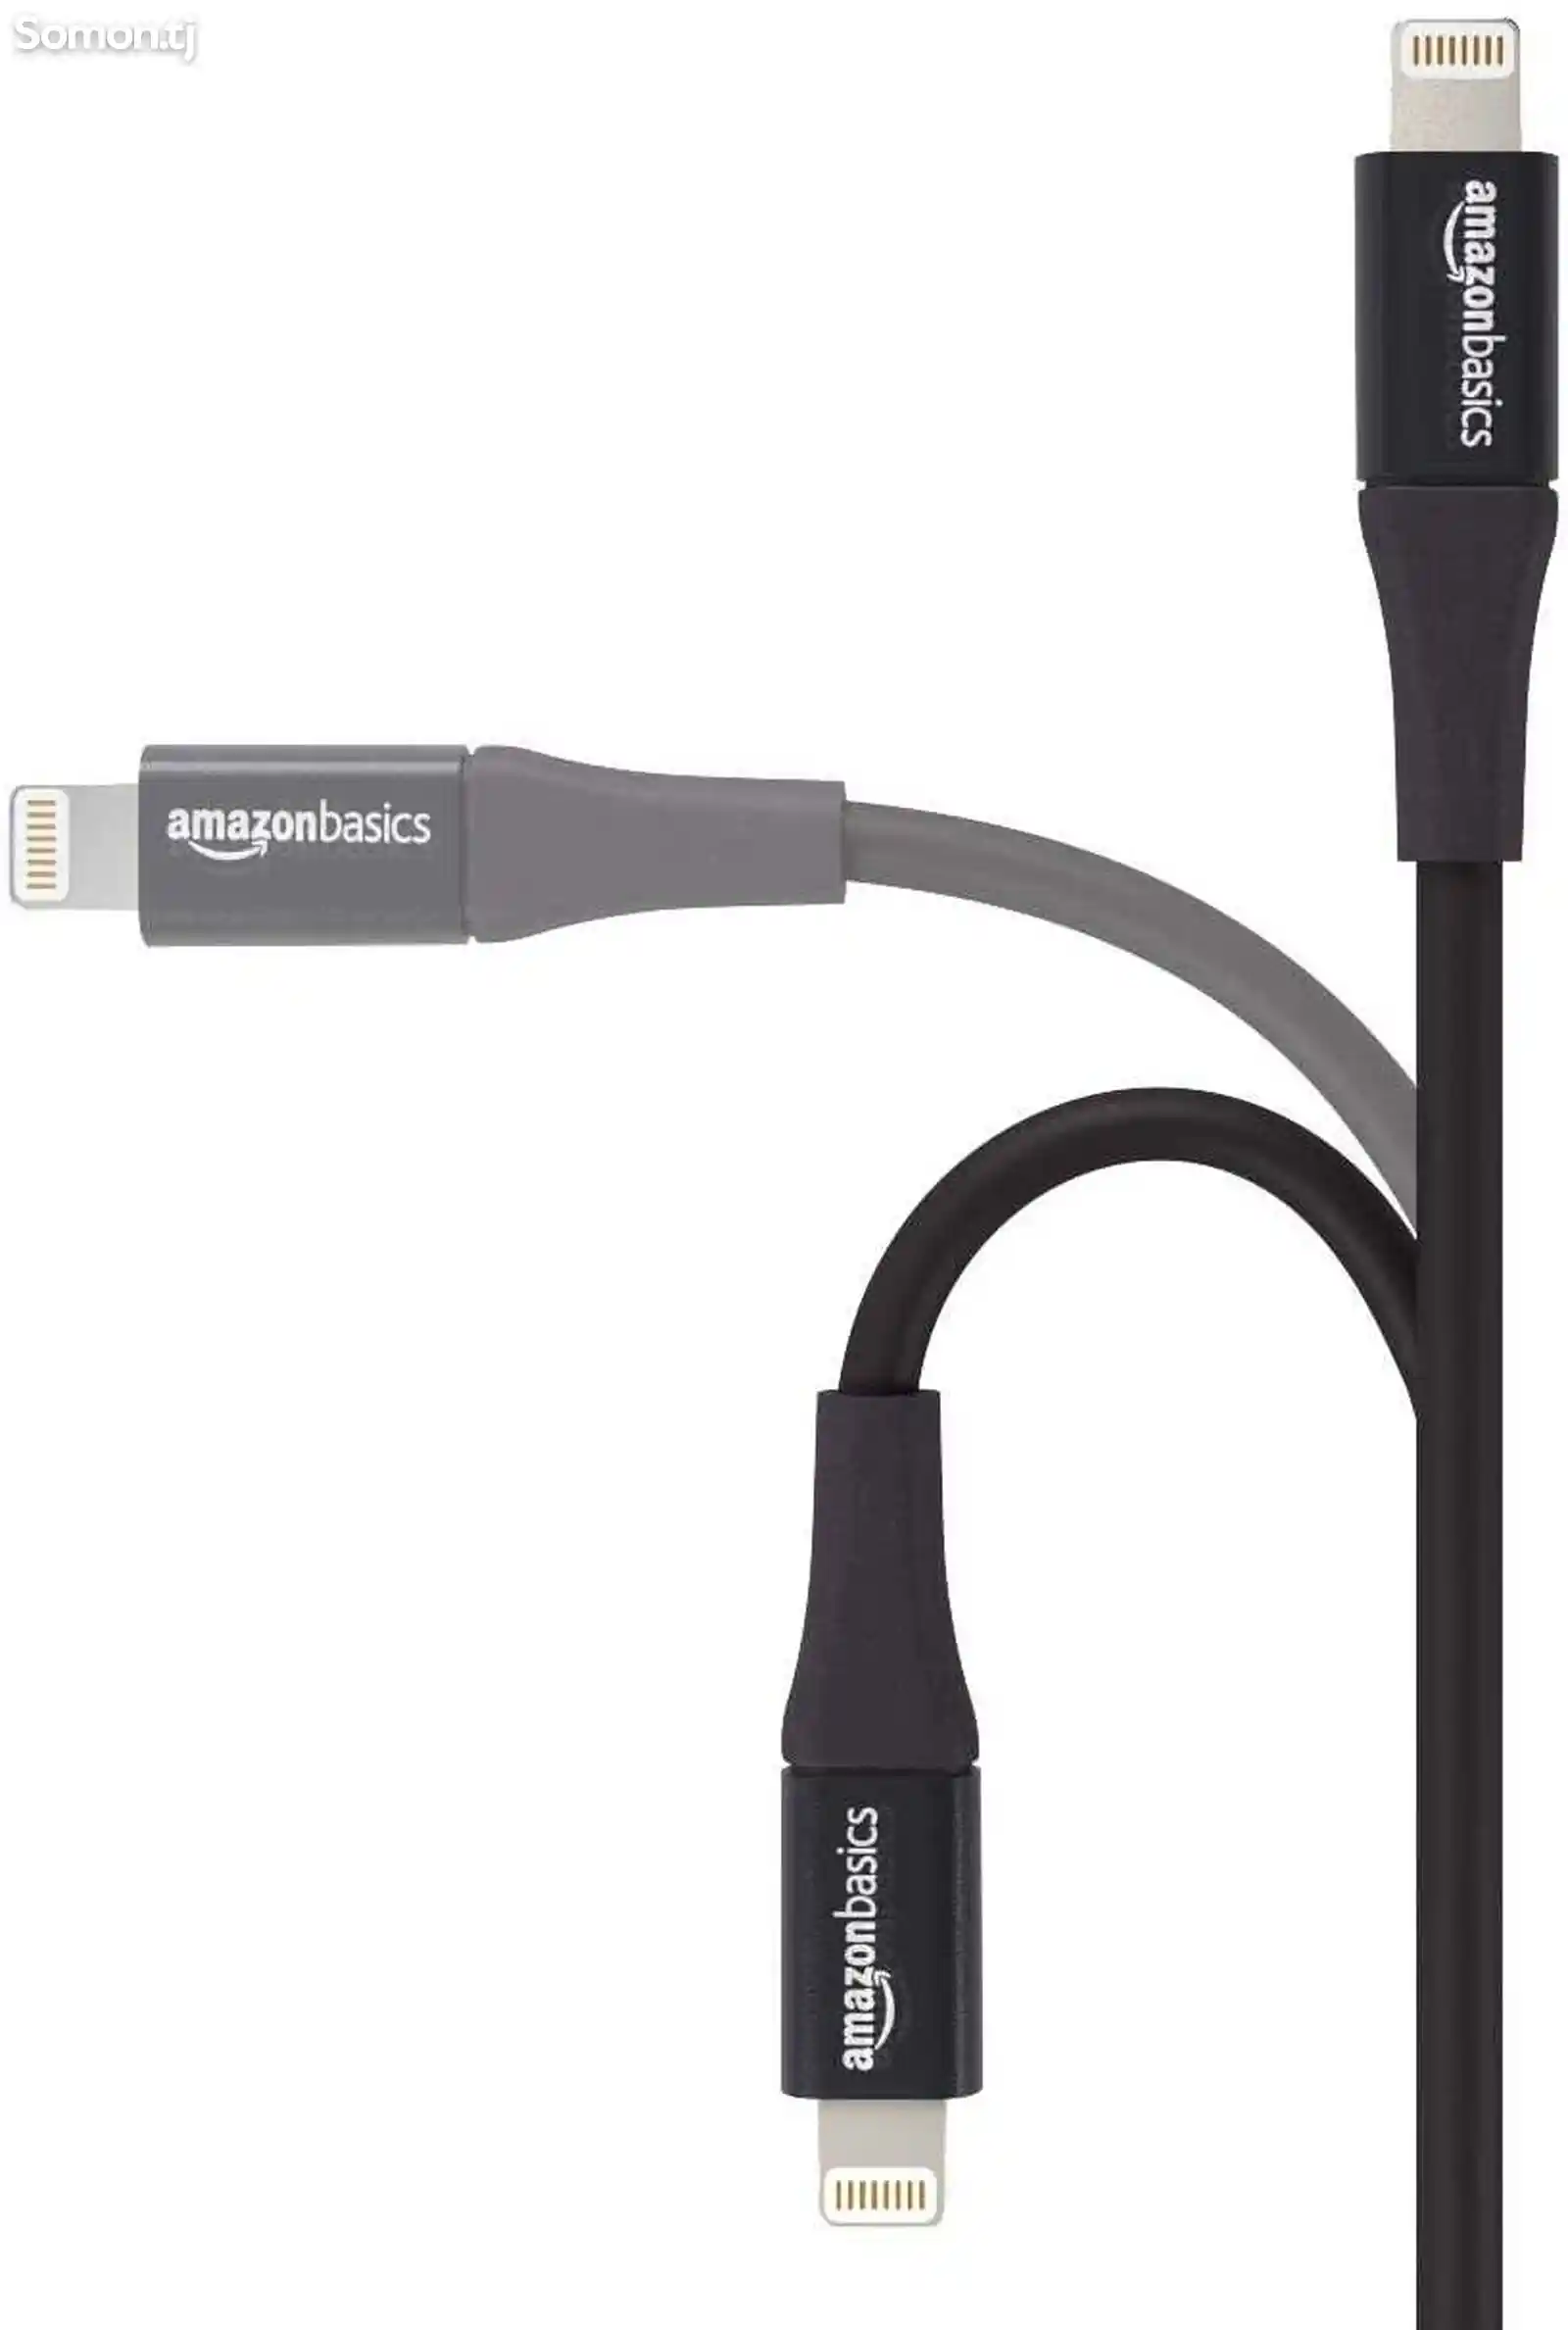 Кабель Lightning / USB Amazon basics 1,8m-5